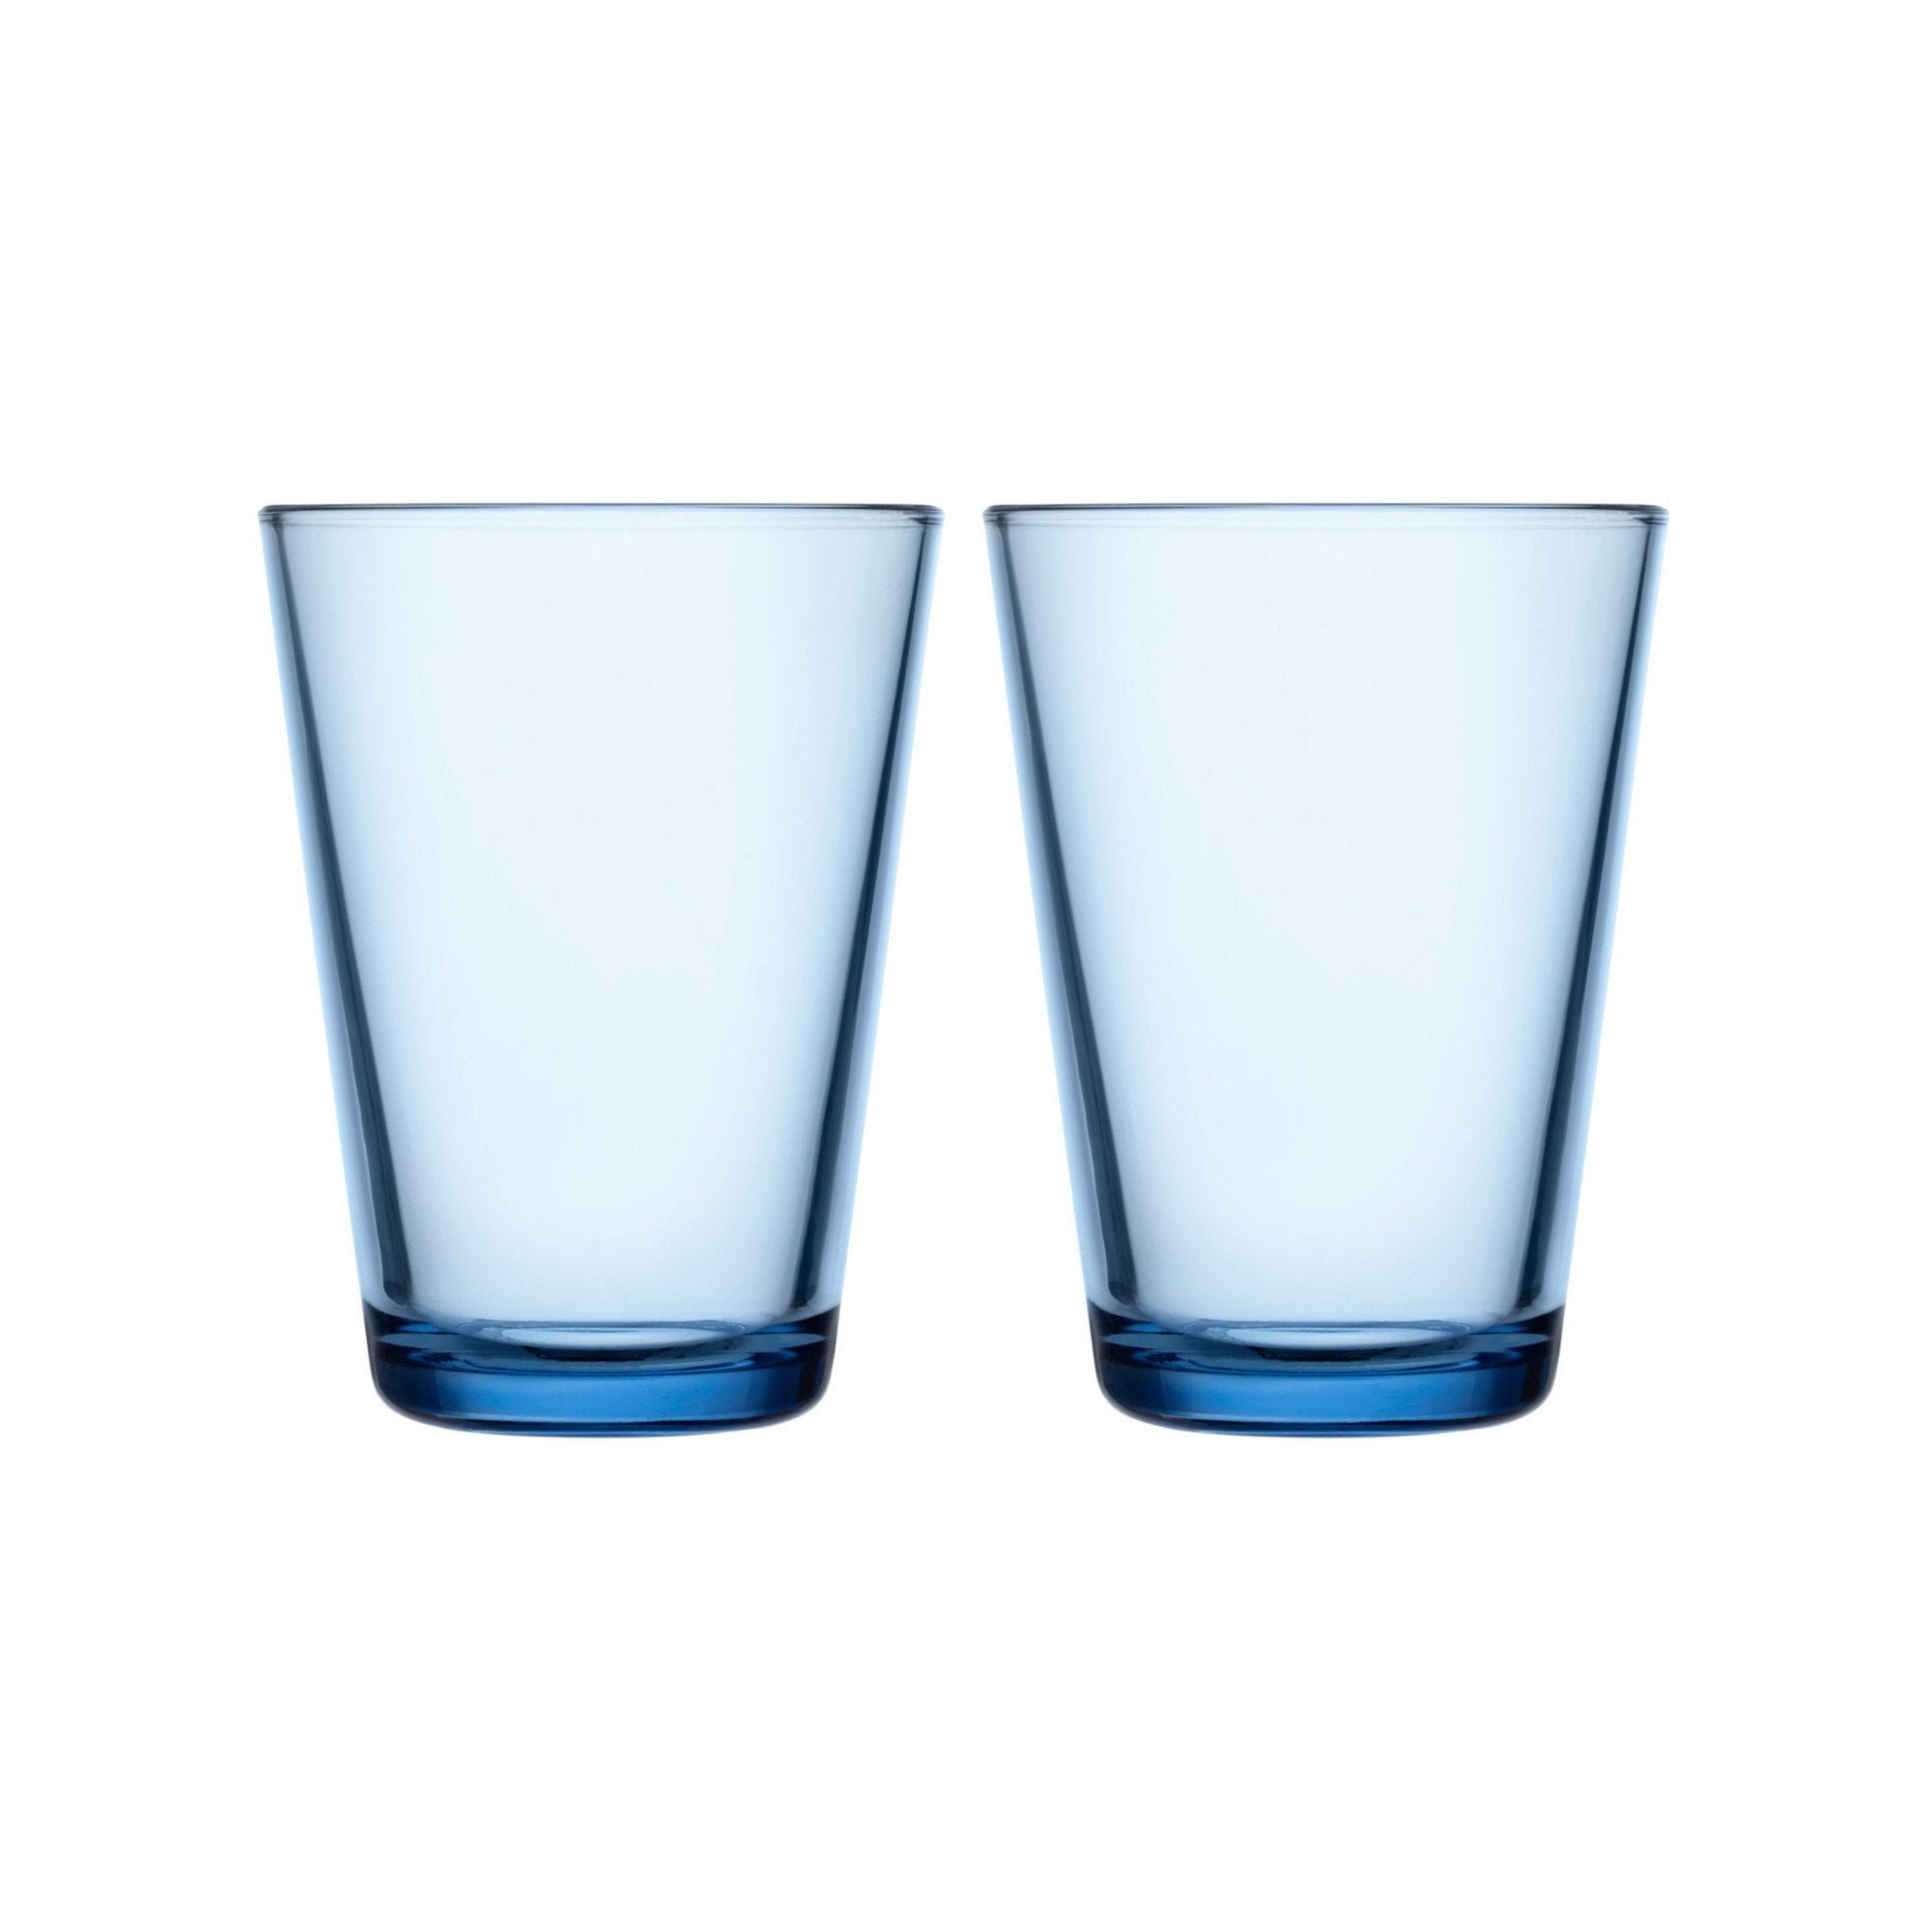 Iittala Katio Picie Glass Aqua 40cl, 2pcs.